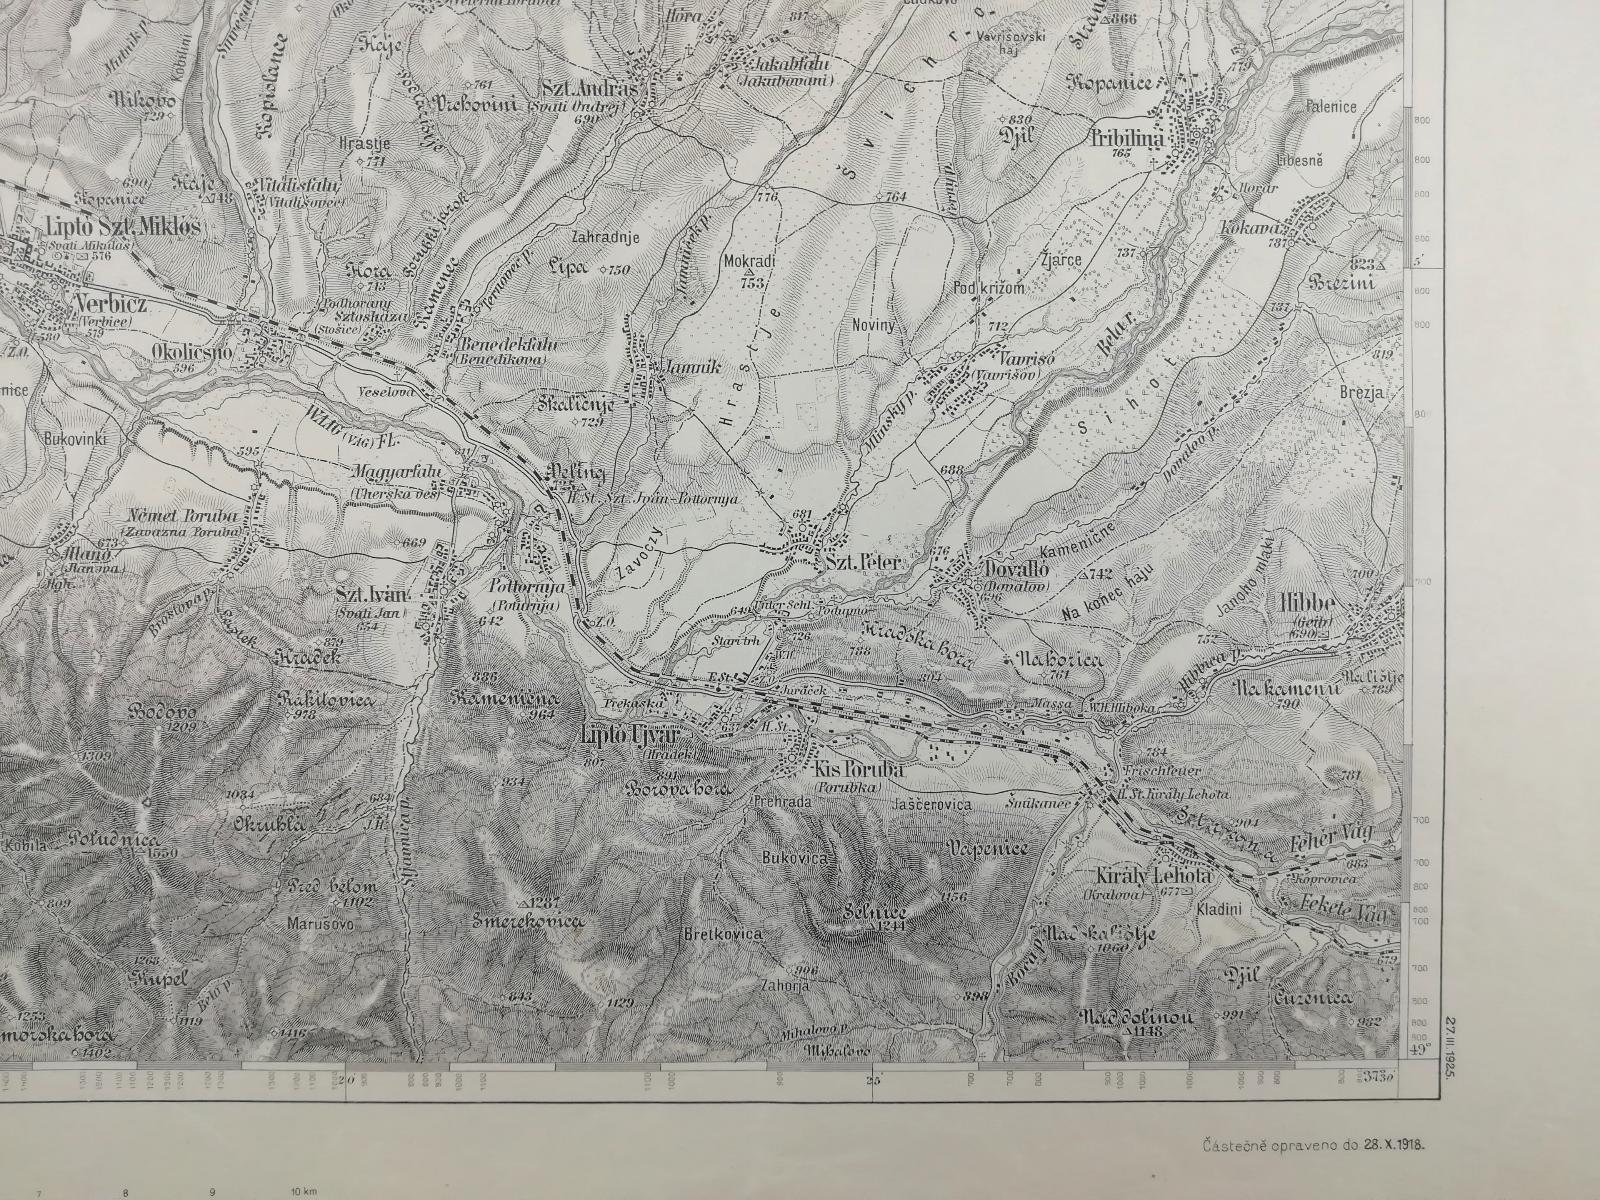 vojenská mapa Liptovský Mikuláš Slovensko speciálka 1:75000 1925 - Sběratelství